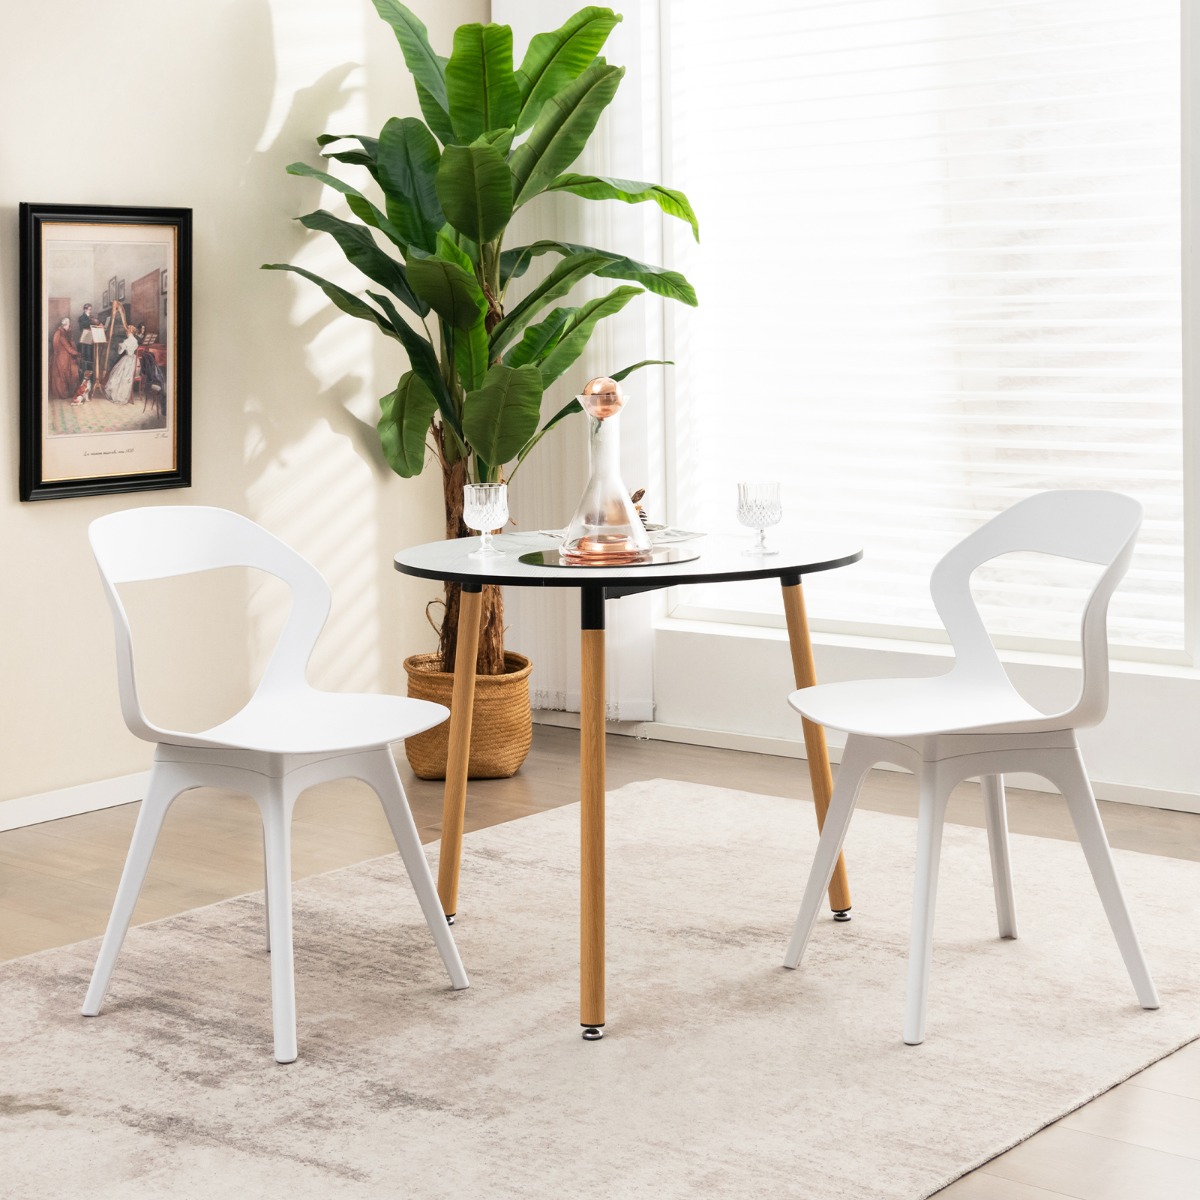 Esszimmerstuhl-Set mit 4 Stühlen Moderne Stühle Küchenstuhl-Set 48 x 54 x 81 cm Weiß von Costway